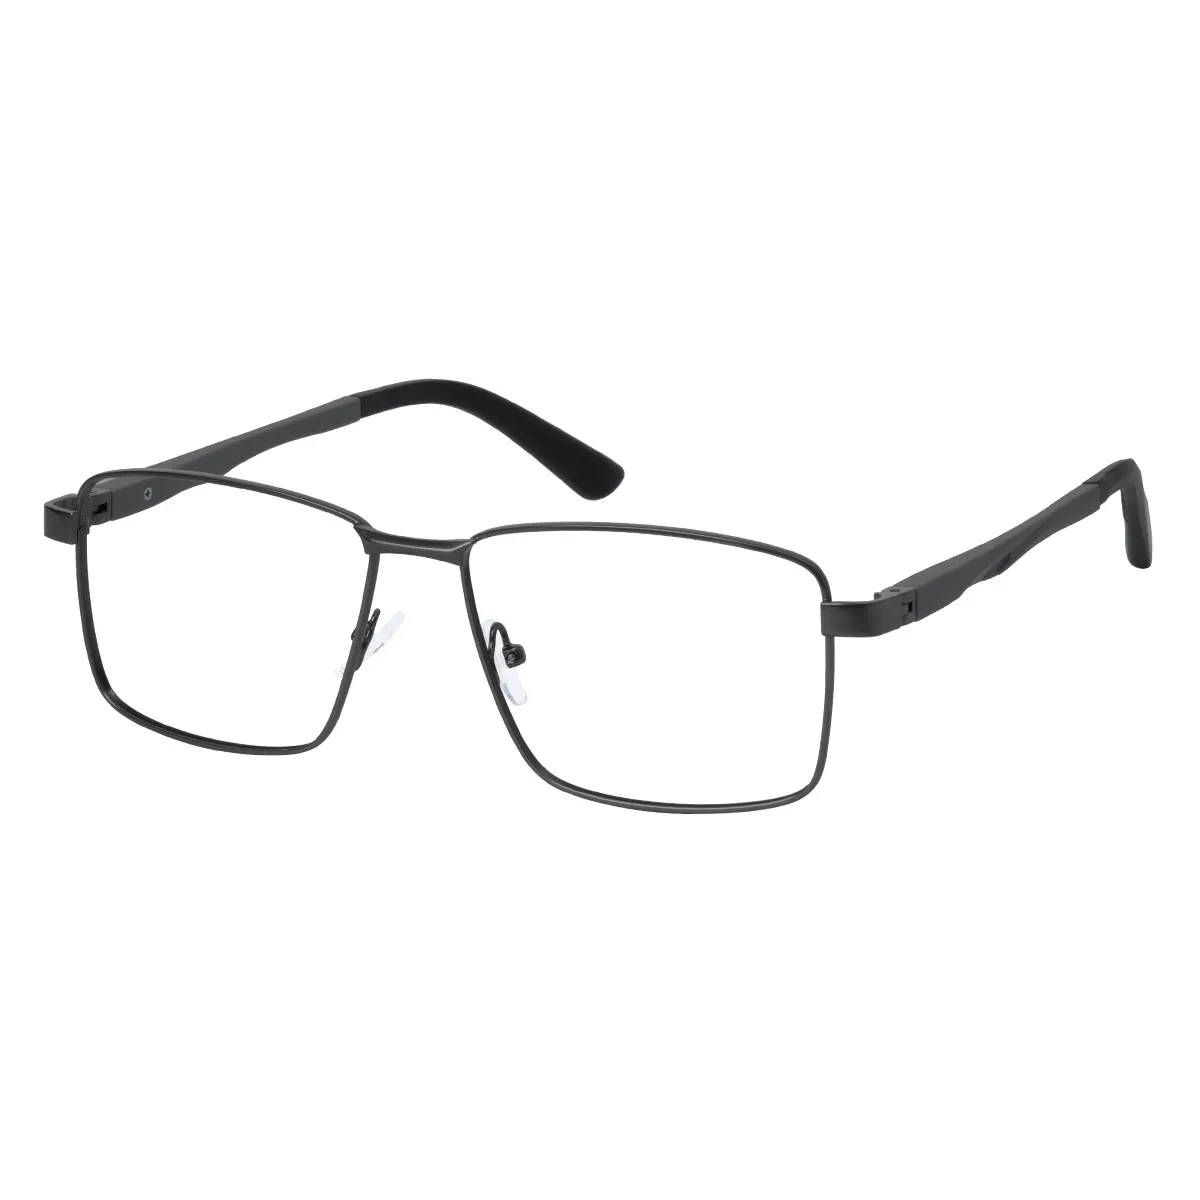 Merrick - Rectangle Black Glasses for Men